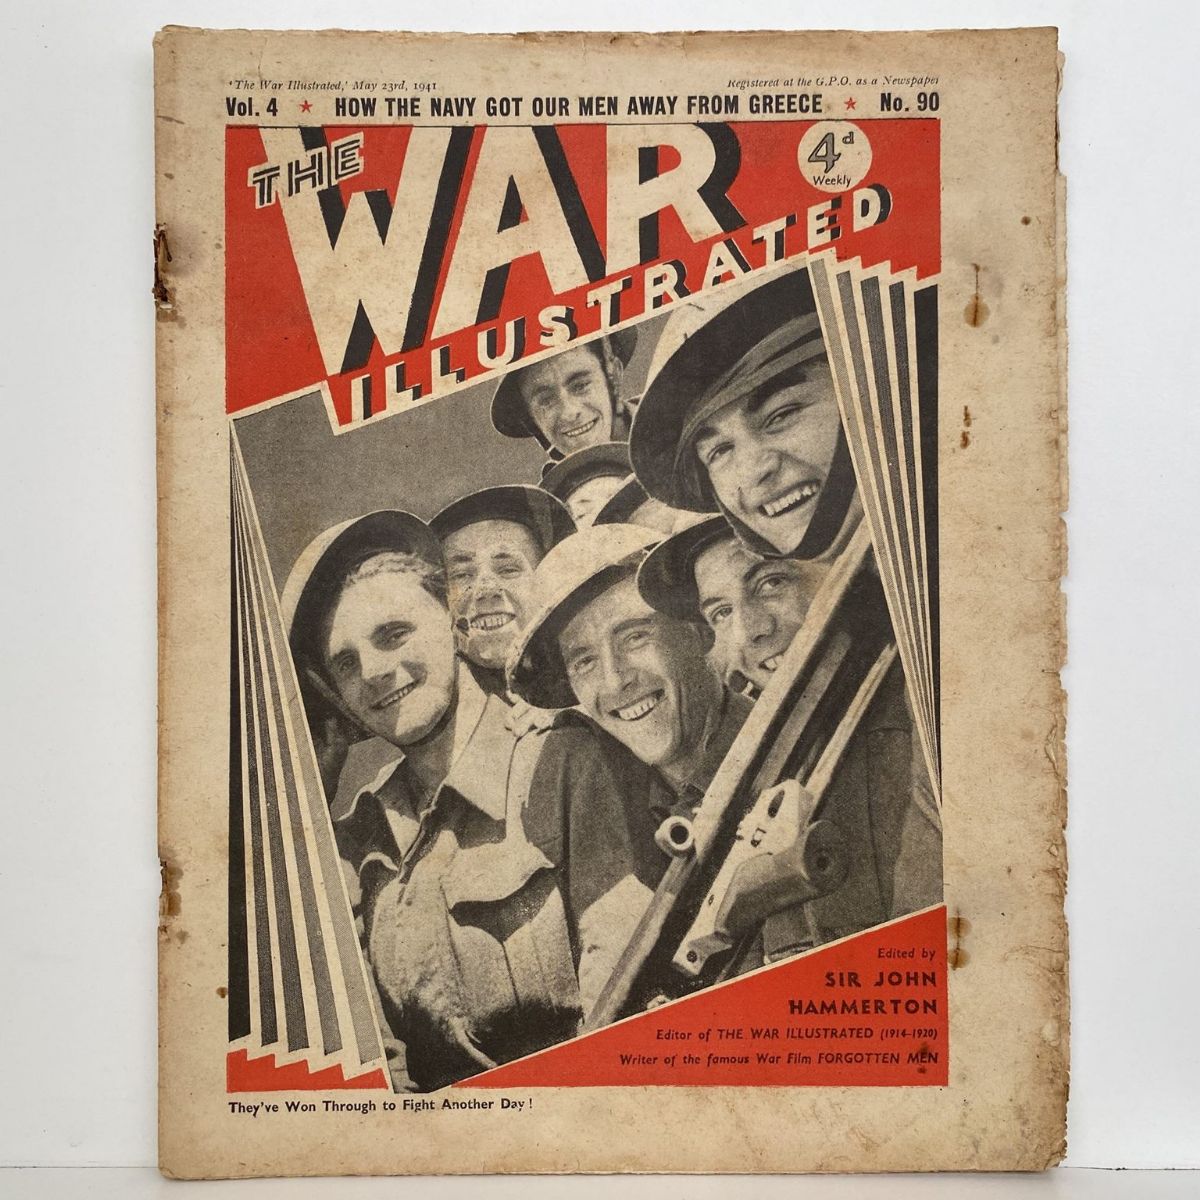 THE WAR ILLUSTRATED - Vol 4, No 90, 23rd May 1941